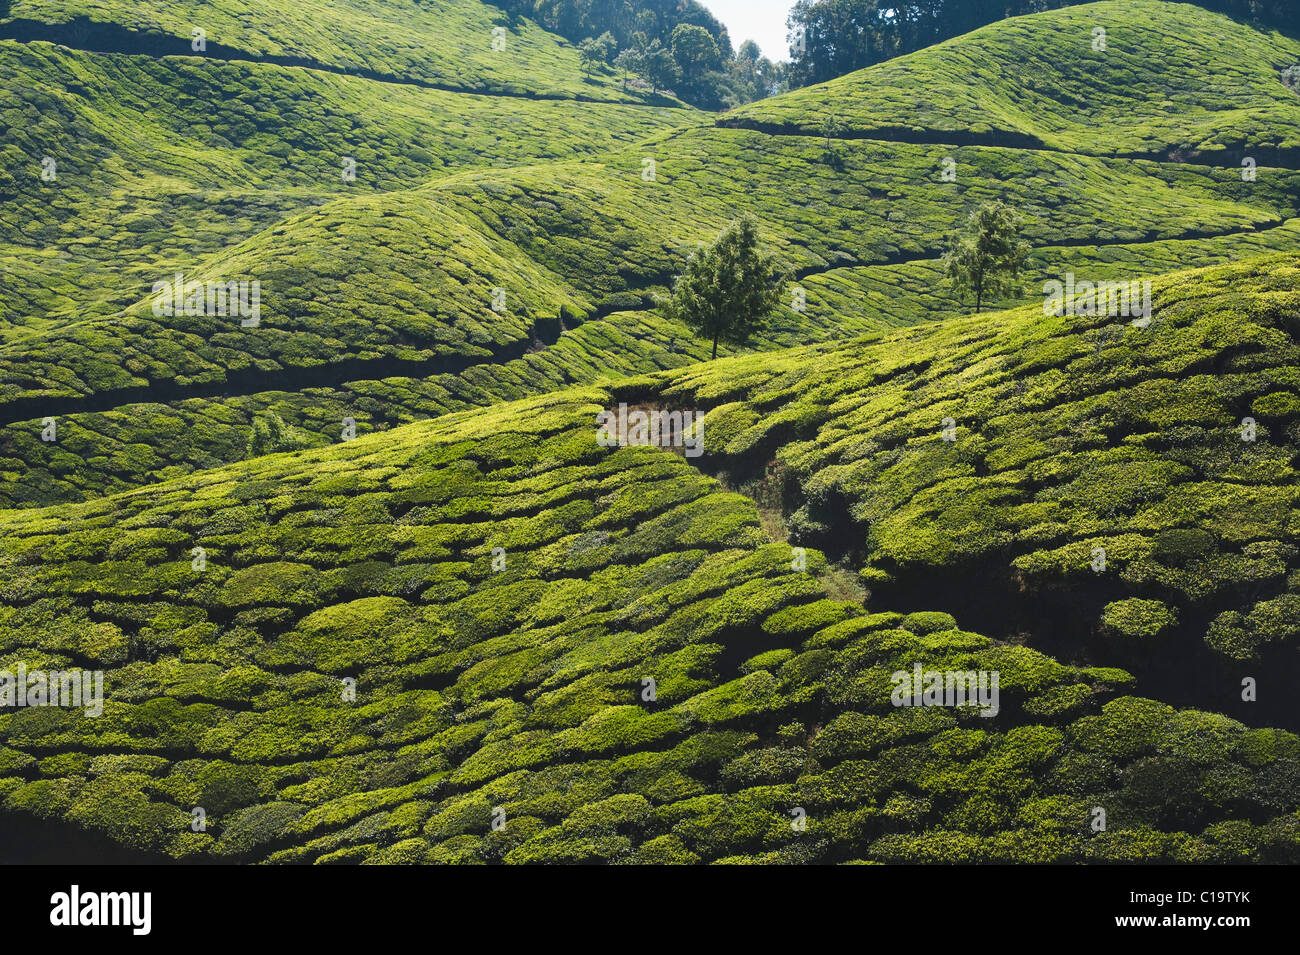 Tea plantation, Munnar, Idukki, Kerala, India Stock Photo